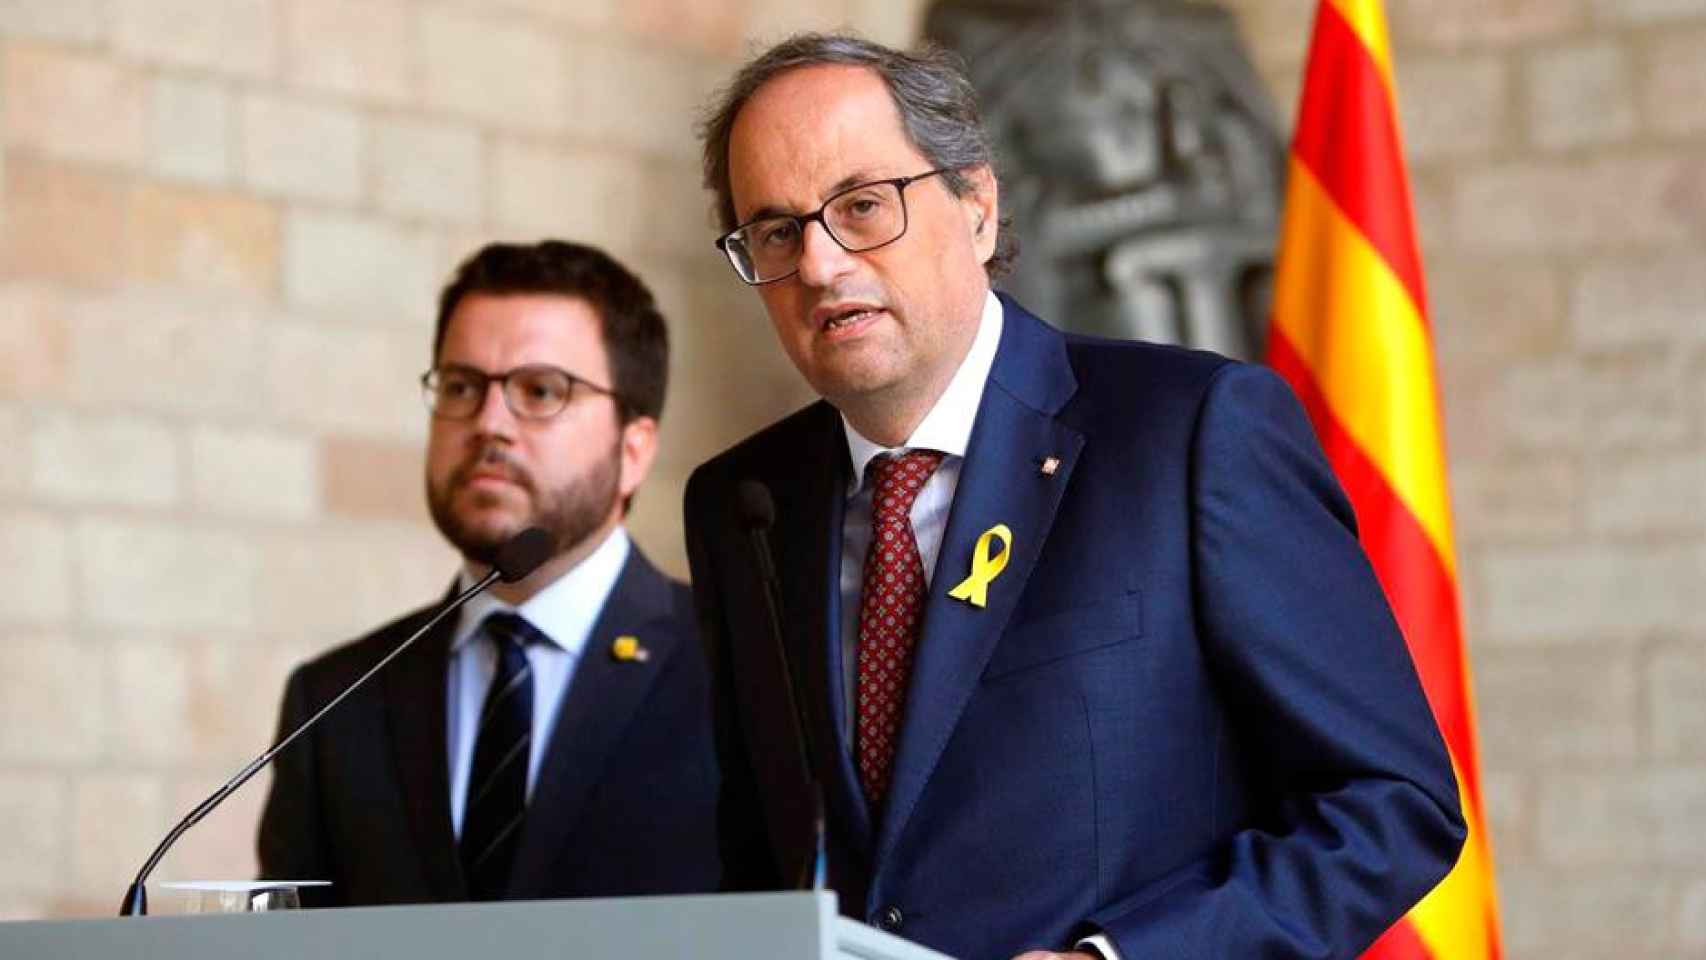 El presidente Quim Torra y el consejero de Economía, Pere Aragonés. Imagen del artículo '¿Hay alguien ahí?' / EFE